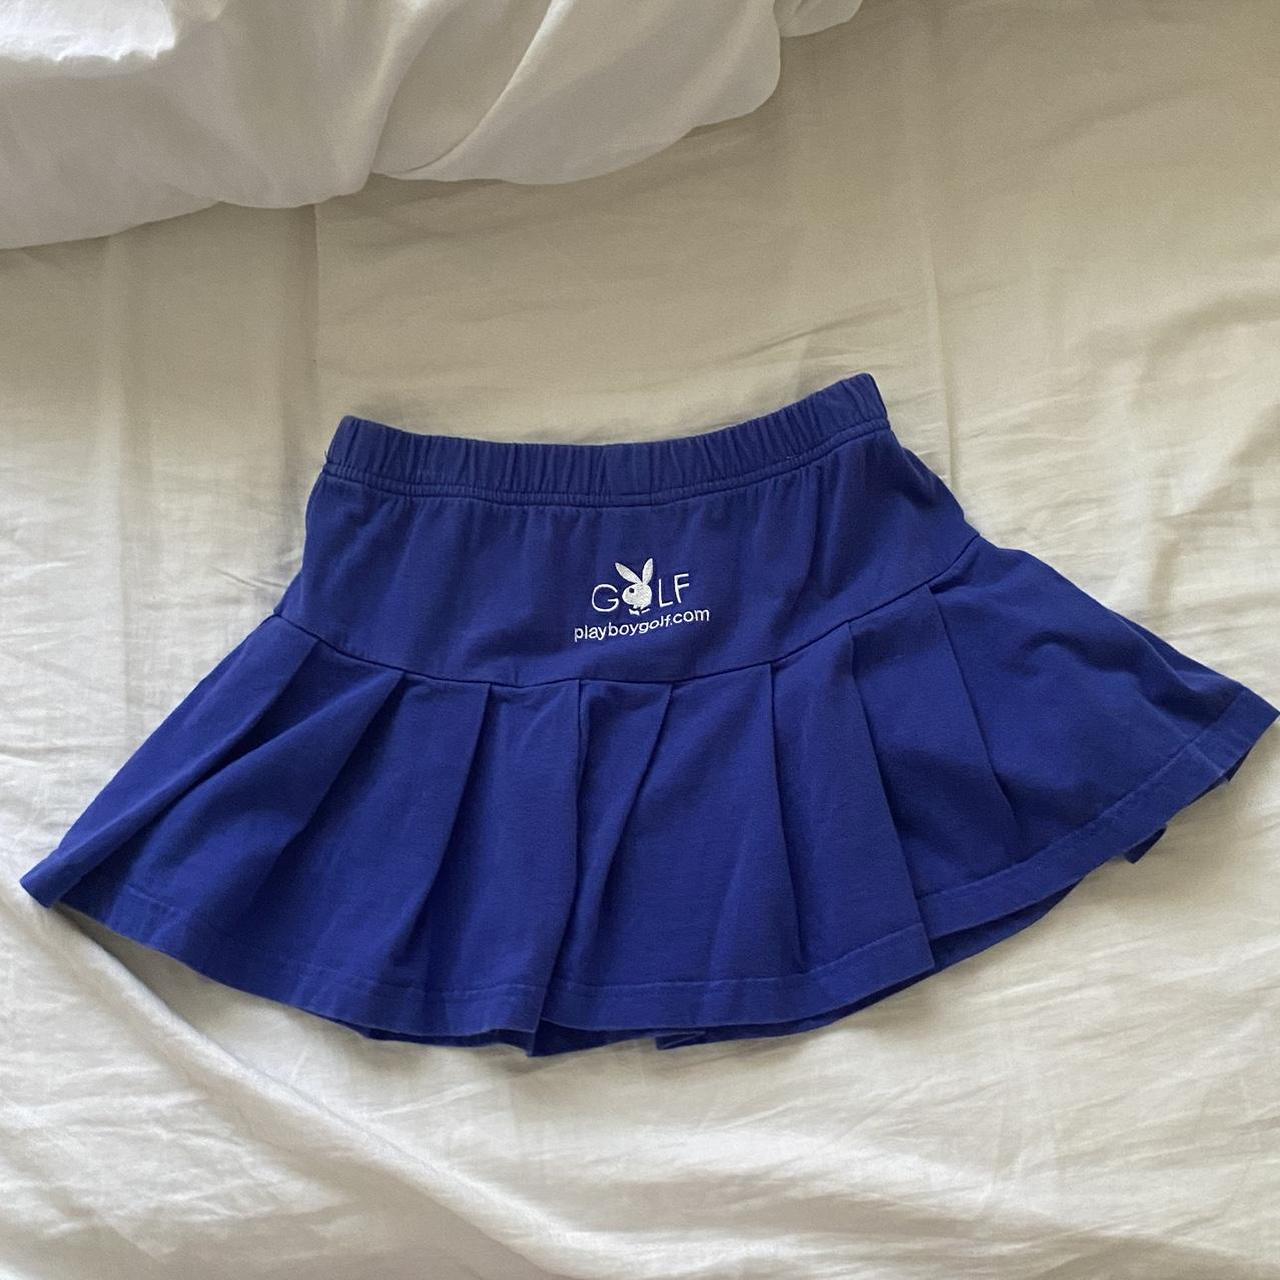 Playboy Women's Blue Skirt | Depop